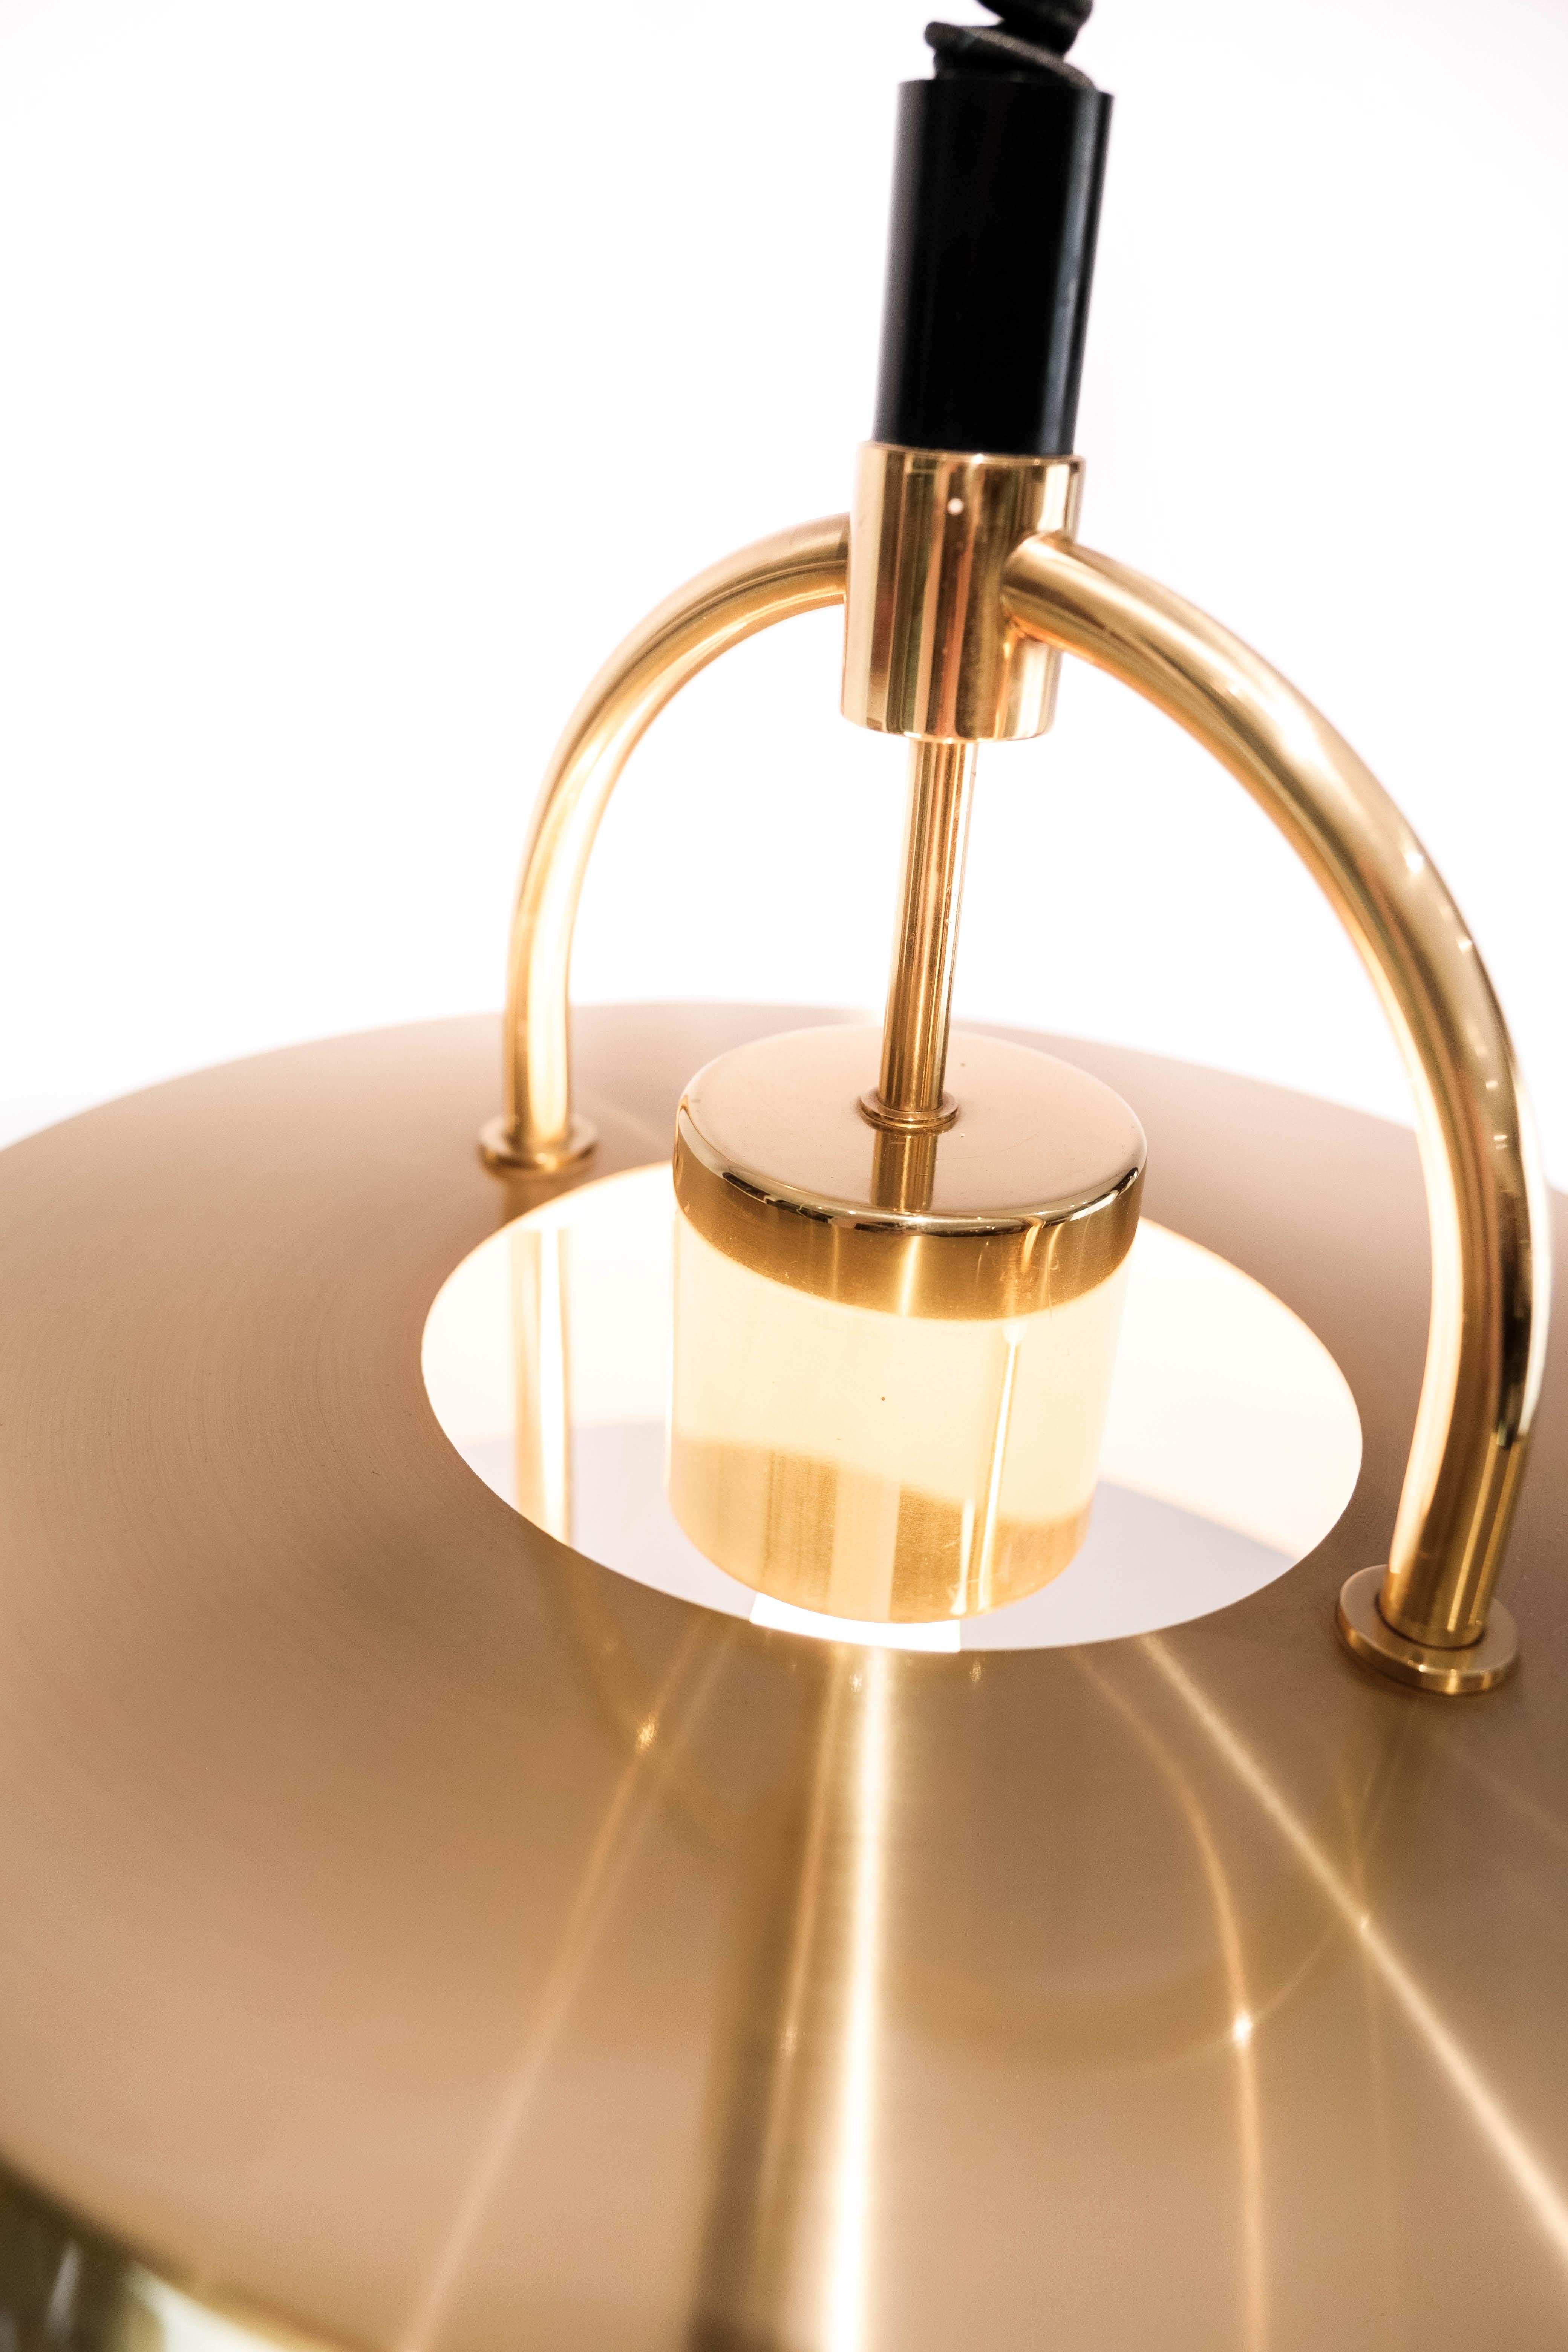 Hängeleuchte, Modell Hercules, von Jo Hammerborg für Fog and Mørup aus den 1960er Jahren. Es ist eine Retro-Hängeleuchte, die schönes skandinavisches Design der Spitzenklasse widerspiegelt. Die Lampe ist die perfekte Dekolampe für über dem Esstisch.